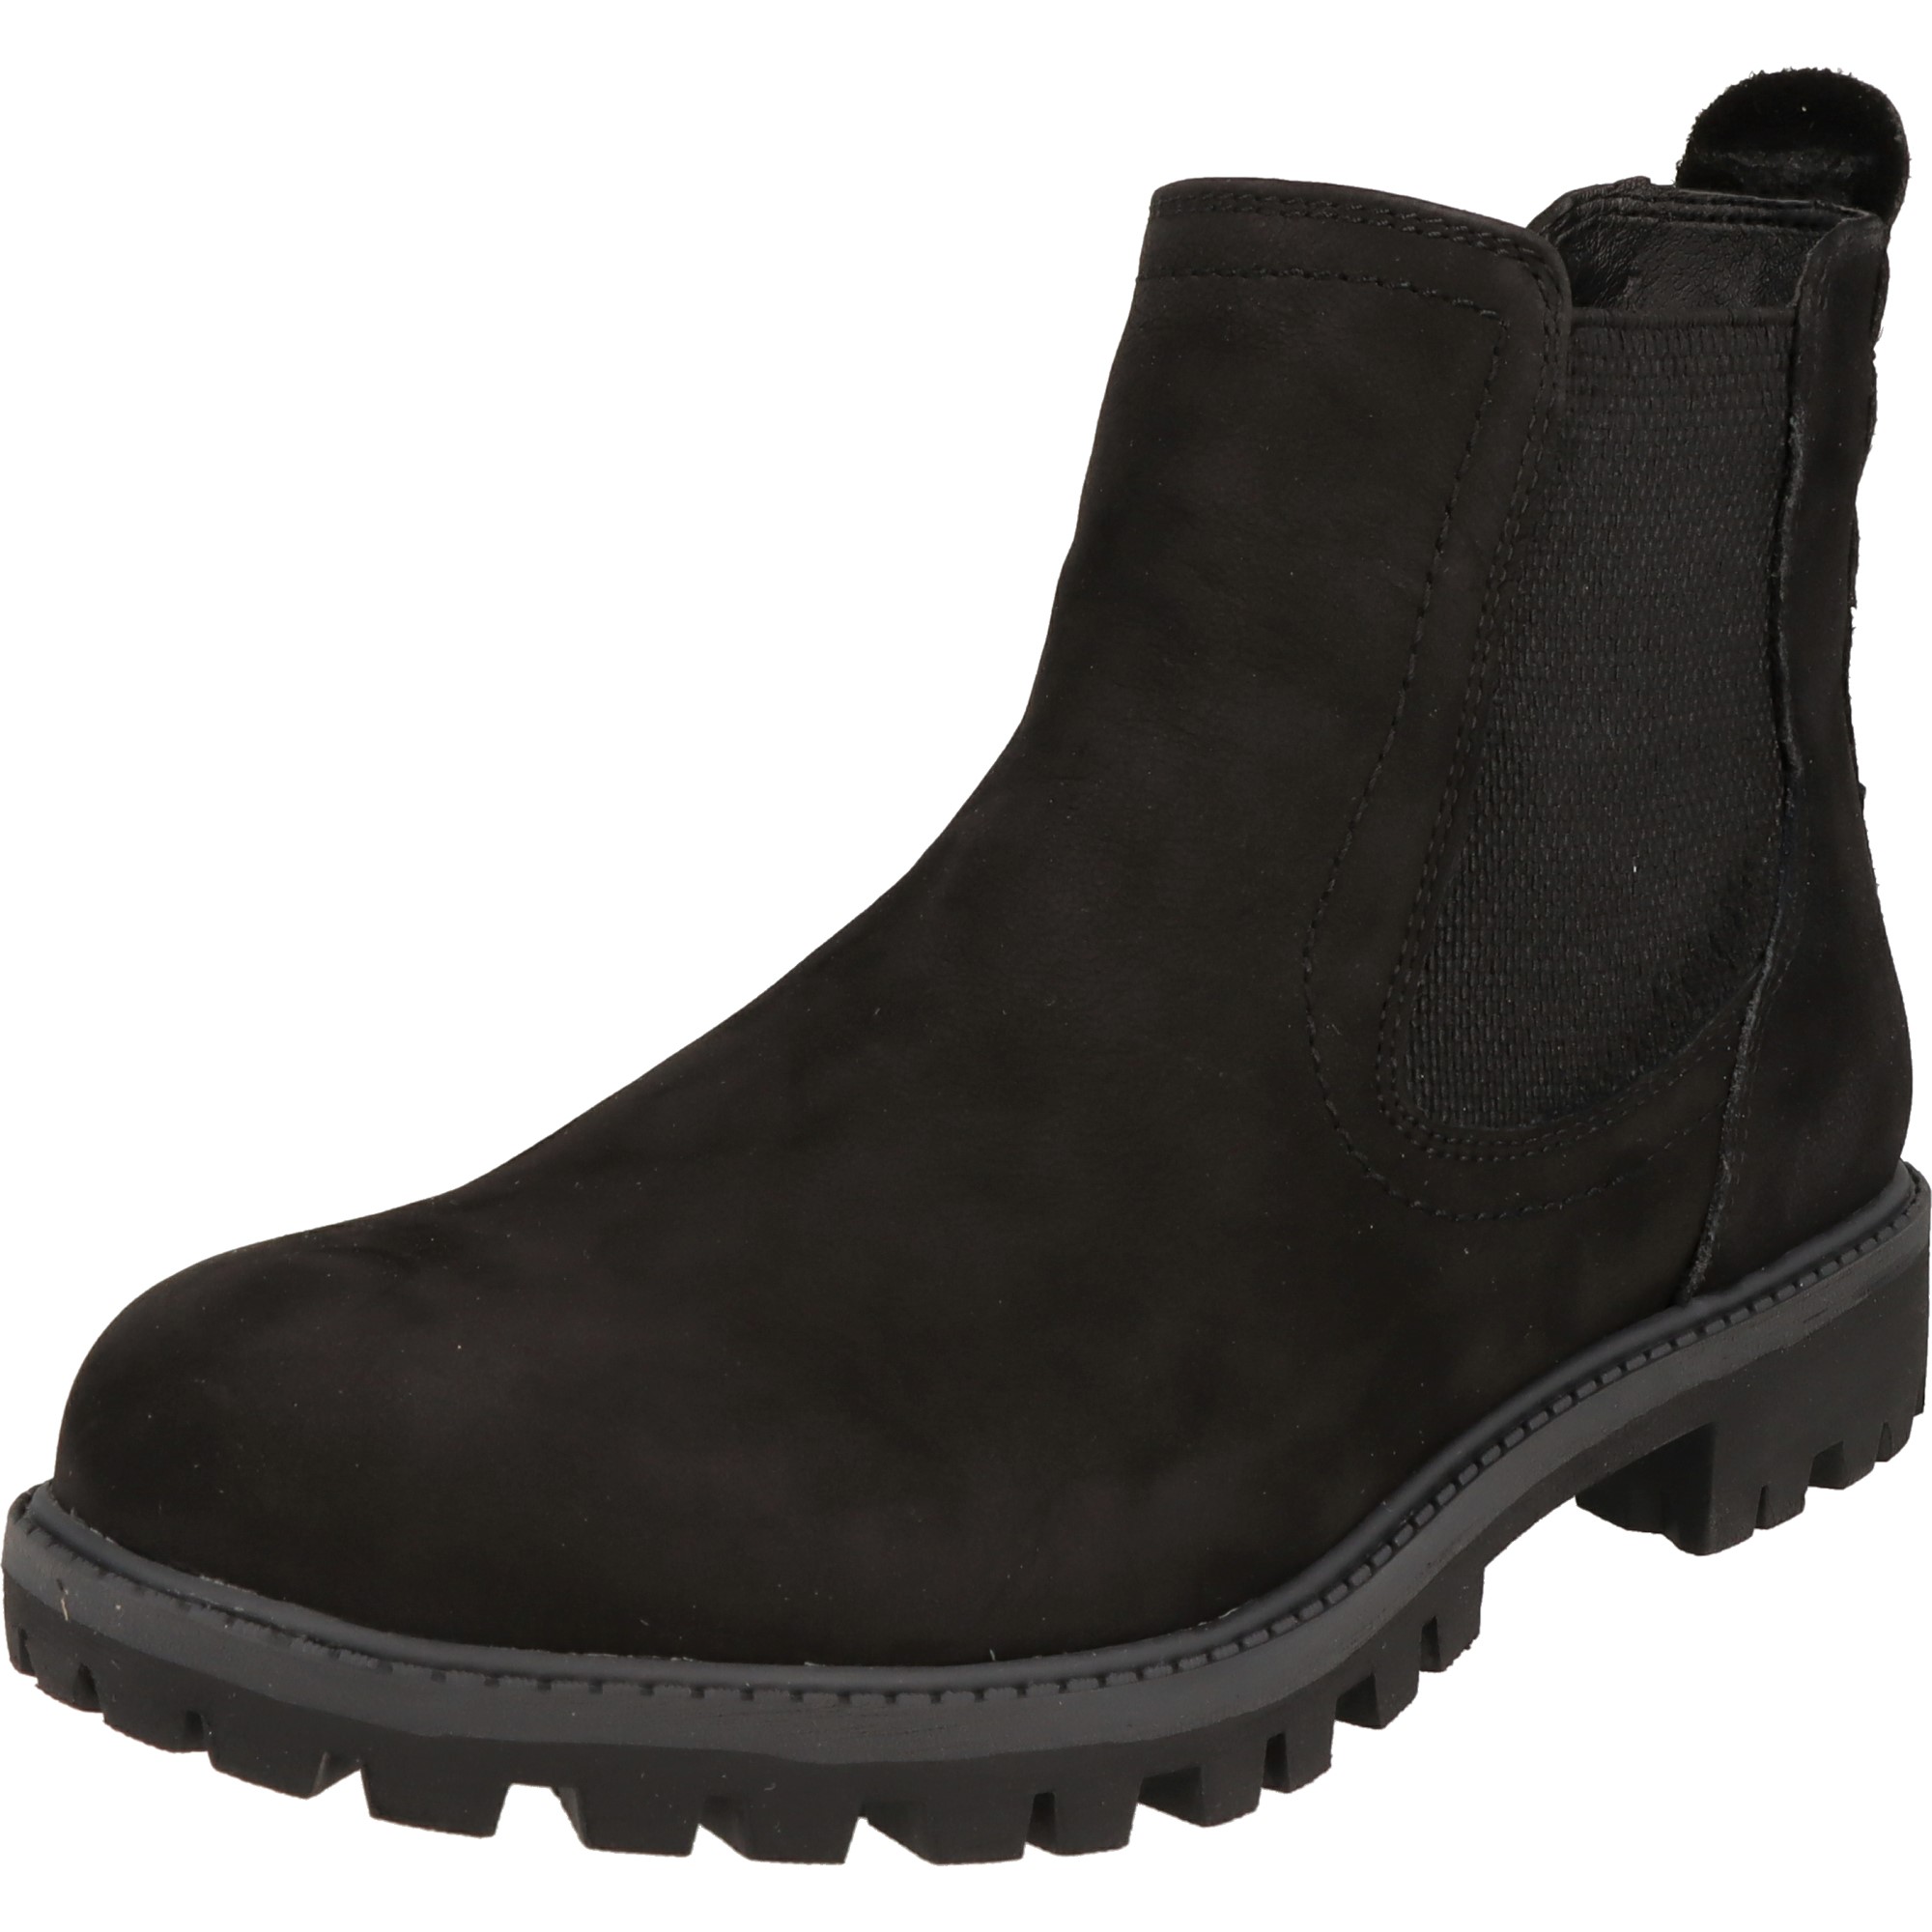 Tamaris Damen Schuhe stylische Leder Chelsea Boots Stiefel 1-25401-29 007 Black